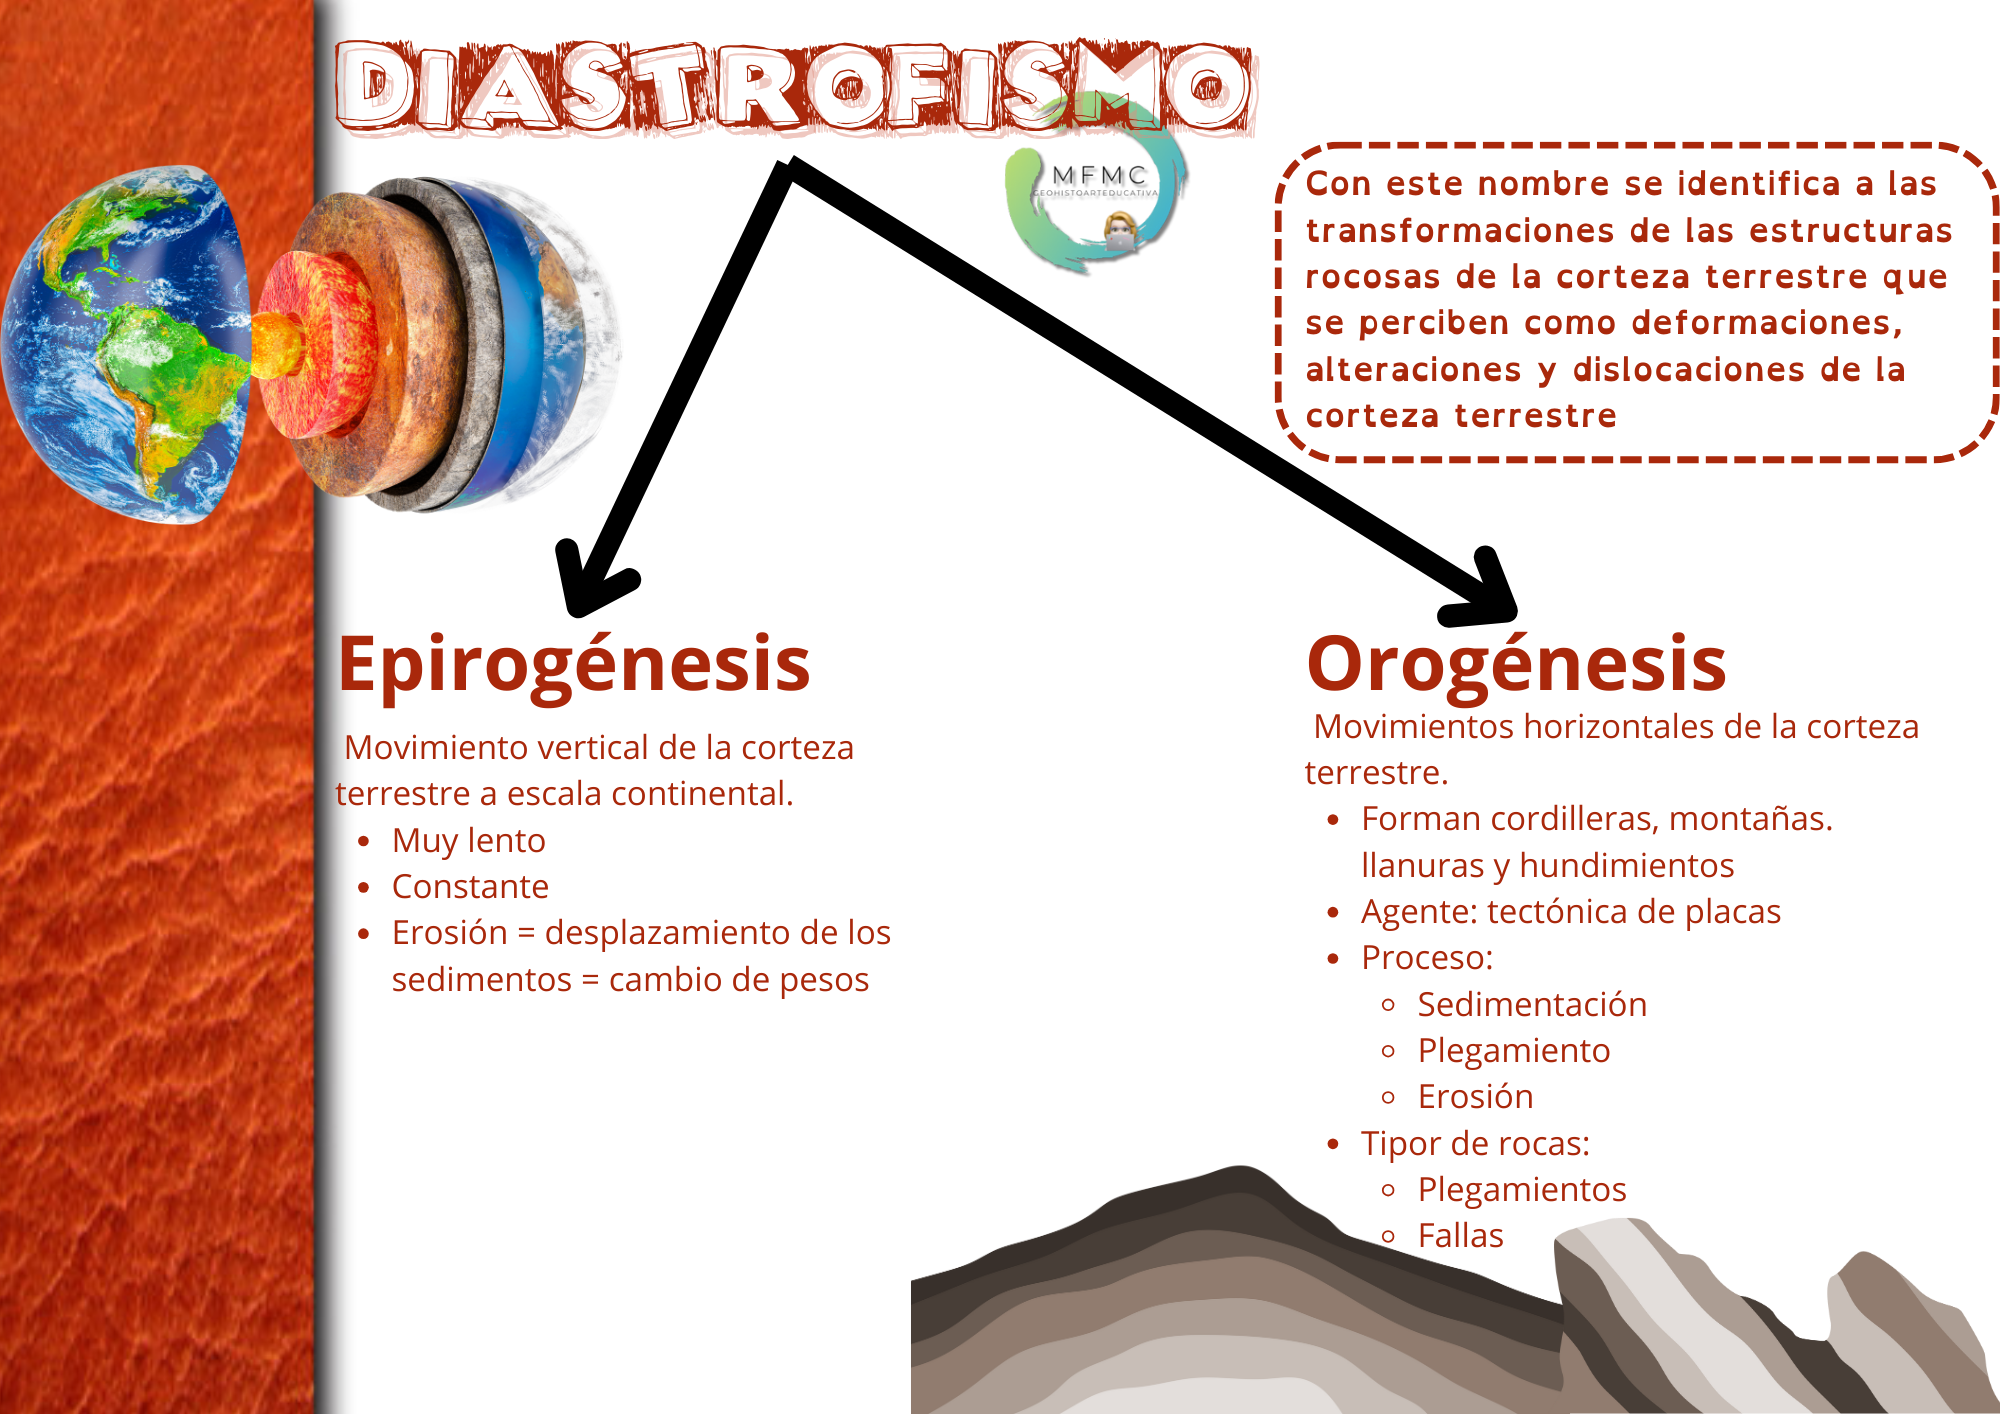 Diastrofismo